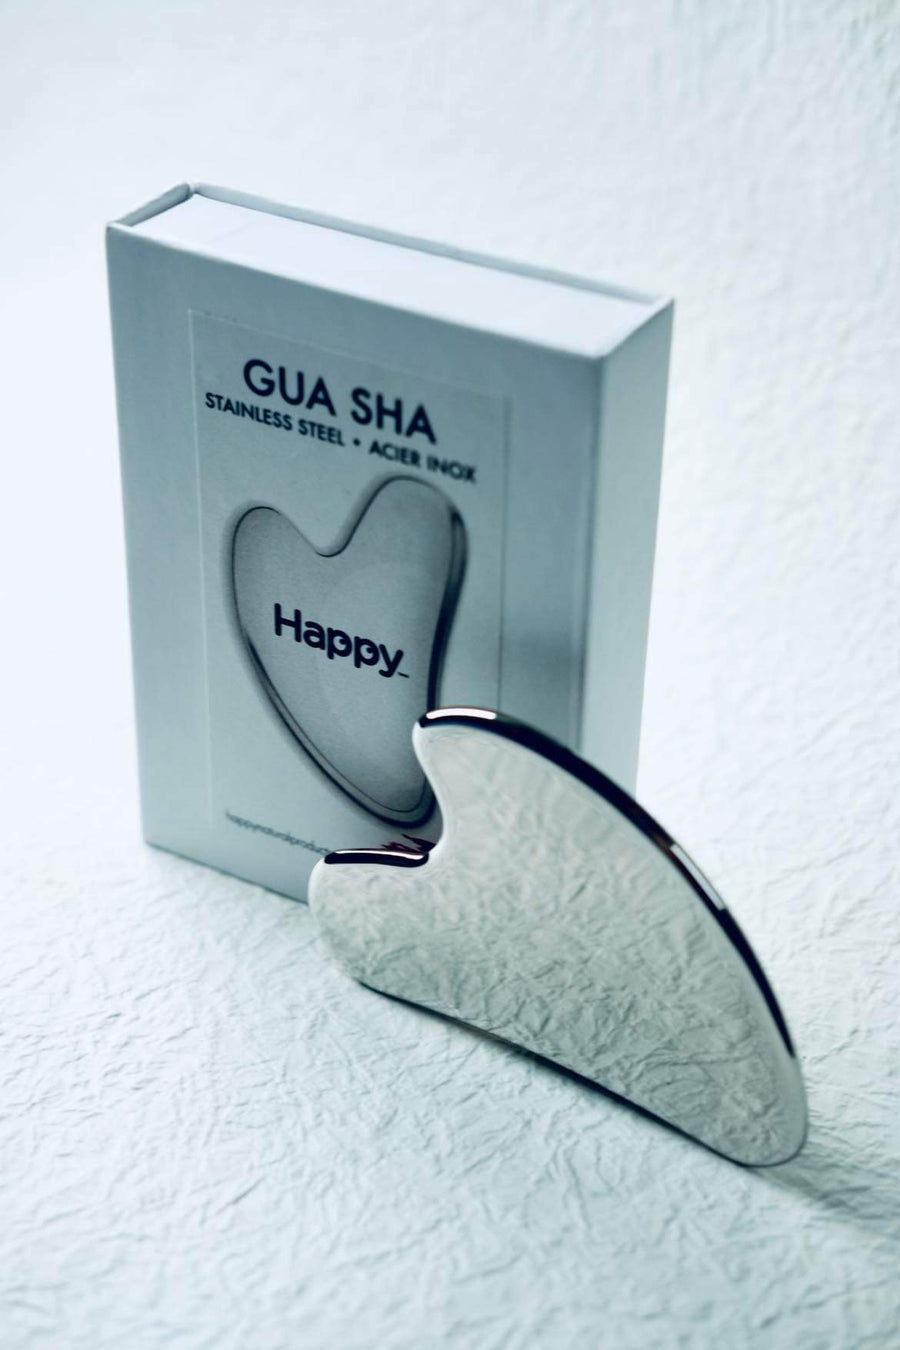 Happy - Gua Sha